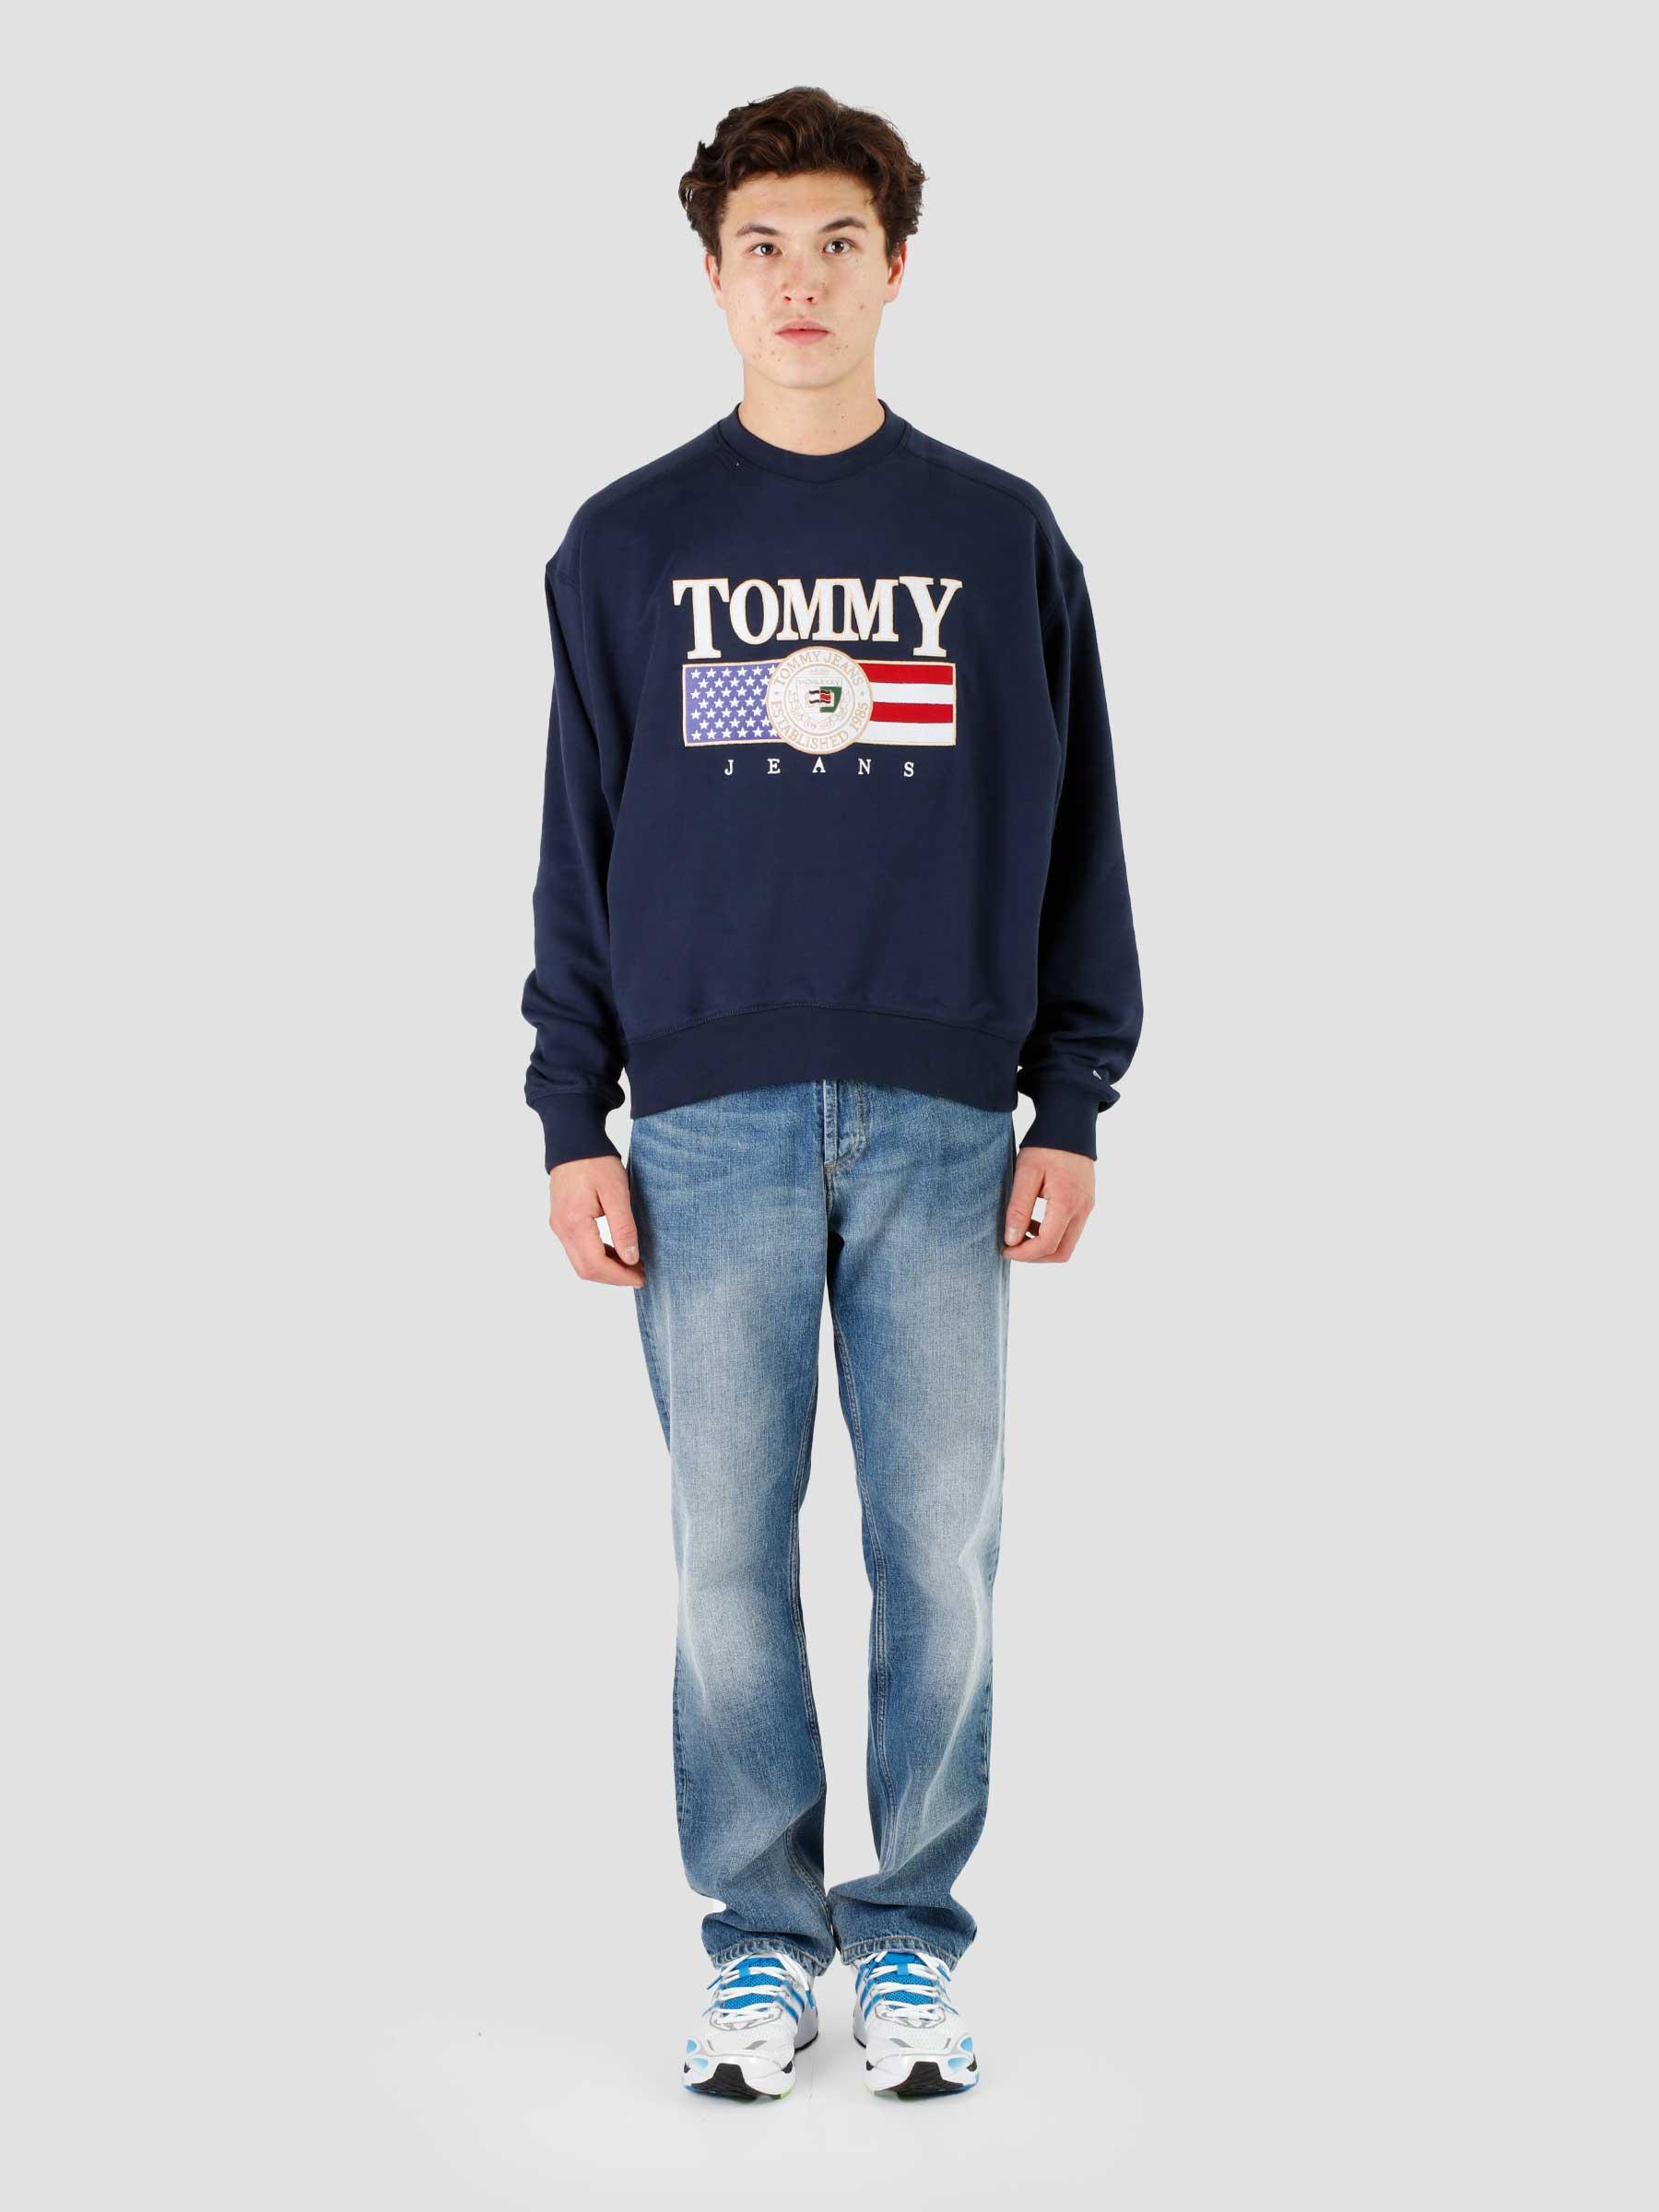 Tommy Jeans TJM Boxy Navy Twilight Crewneck - Luxe Freshcotton TJ